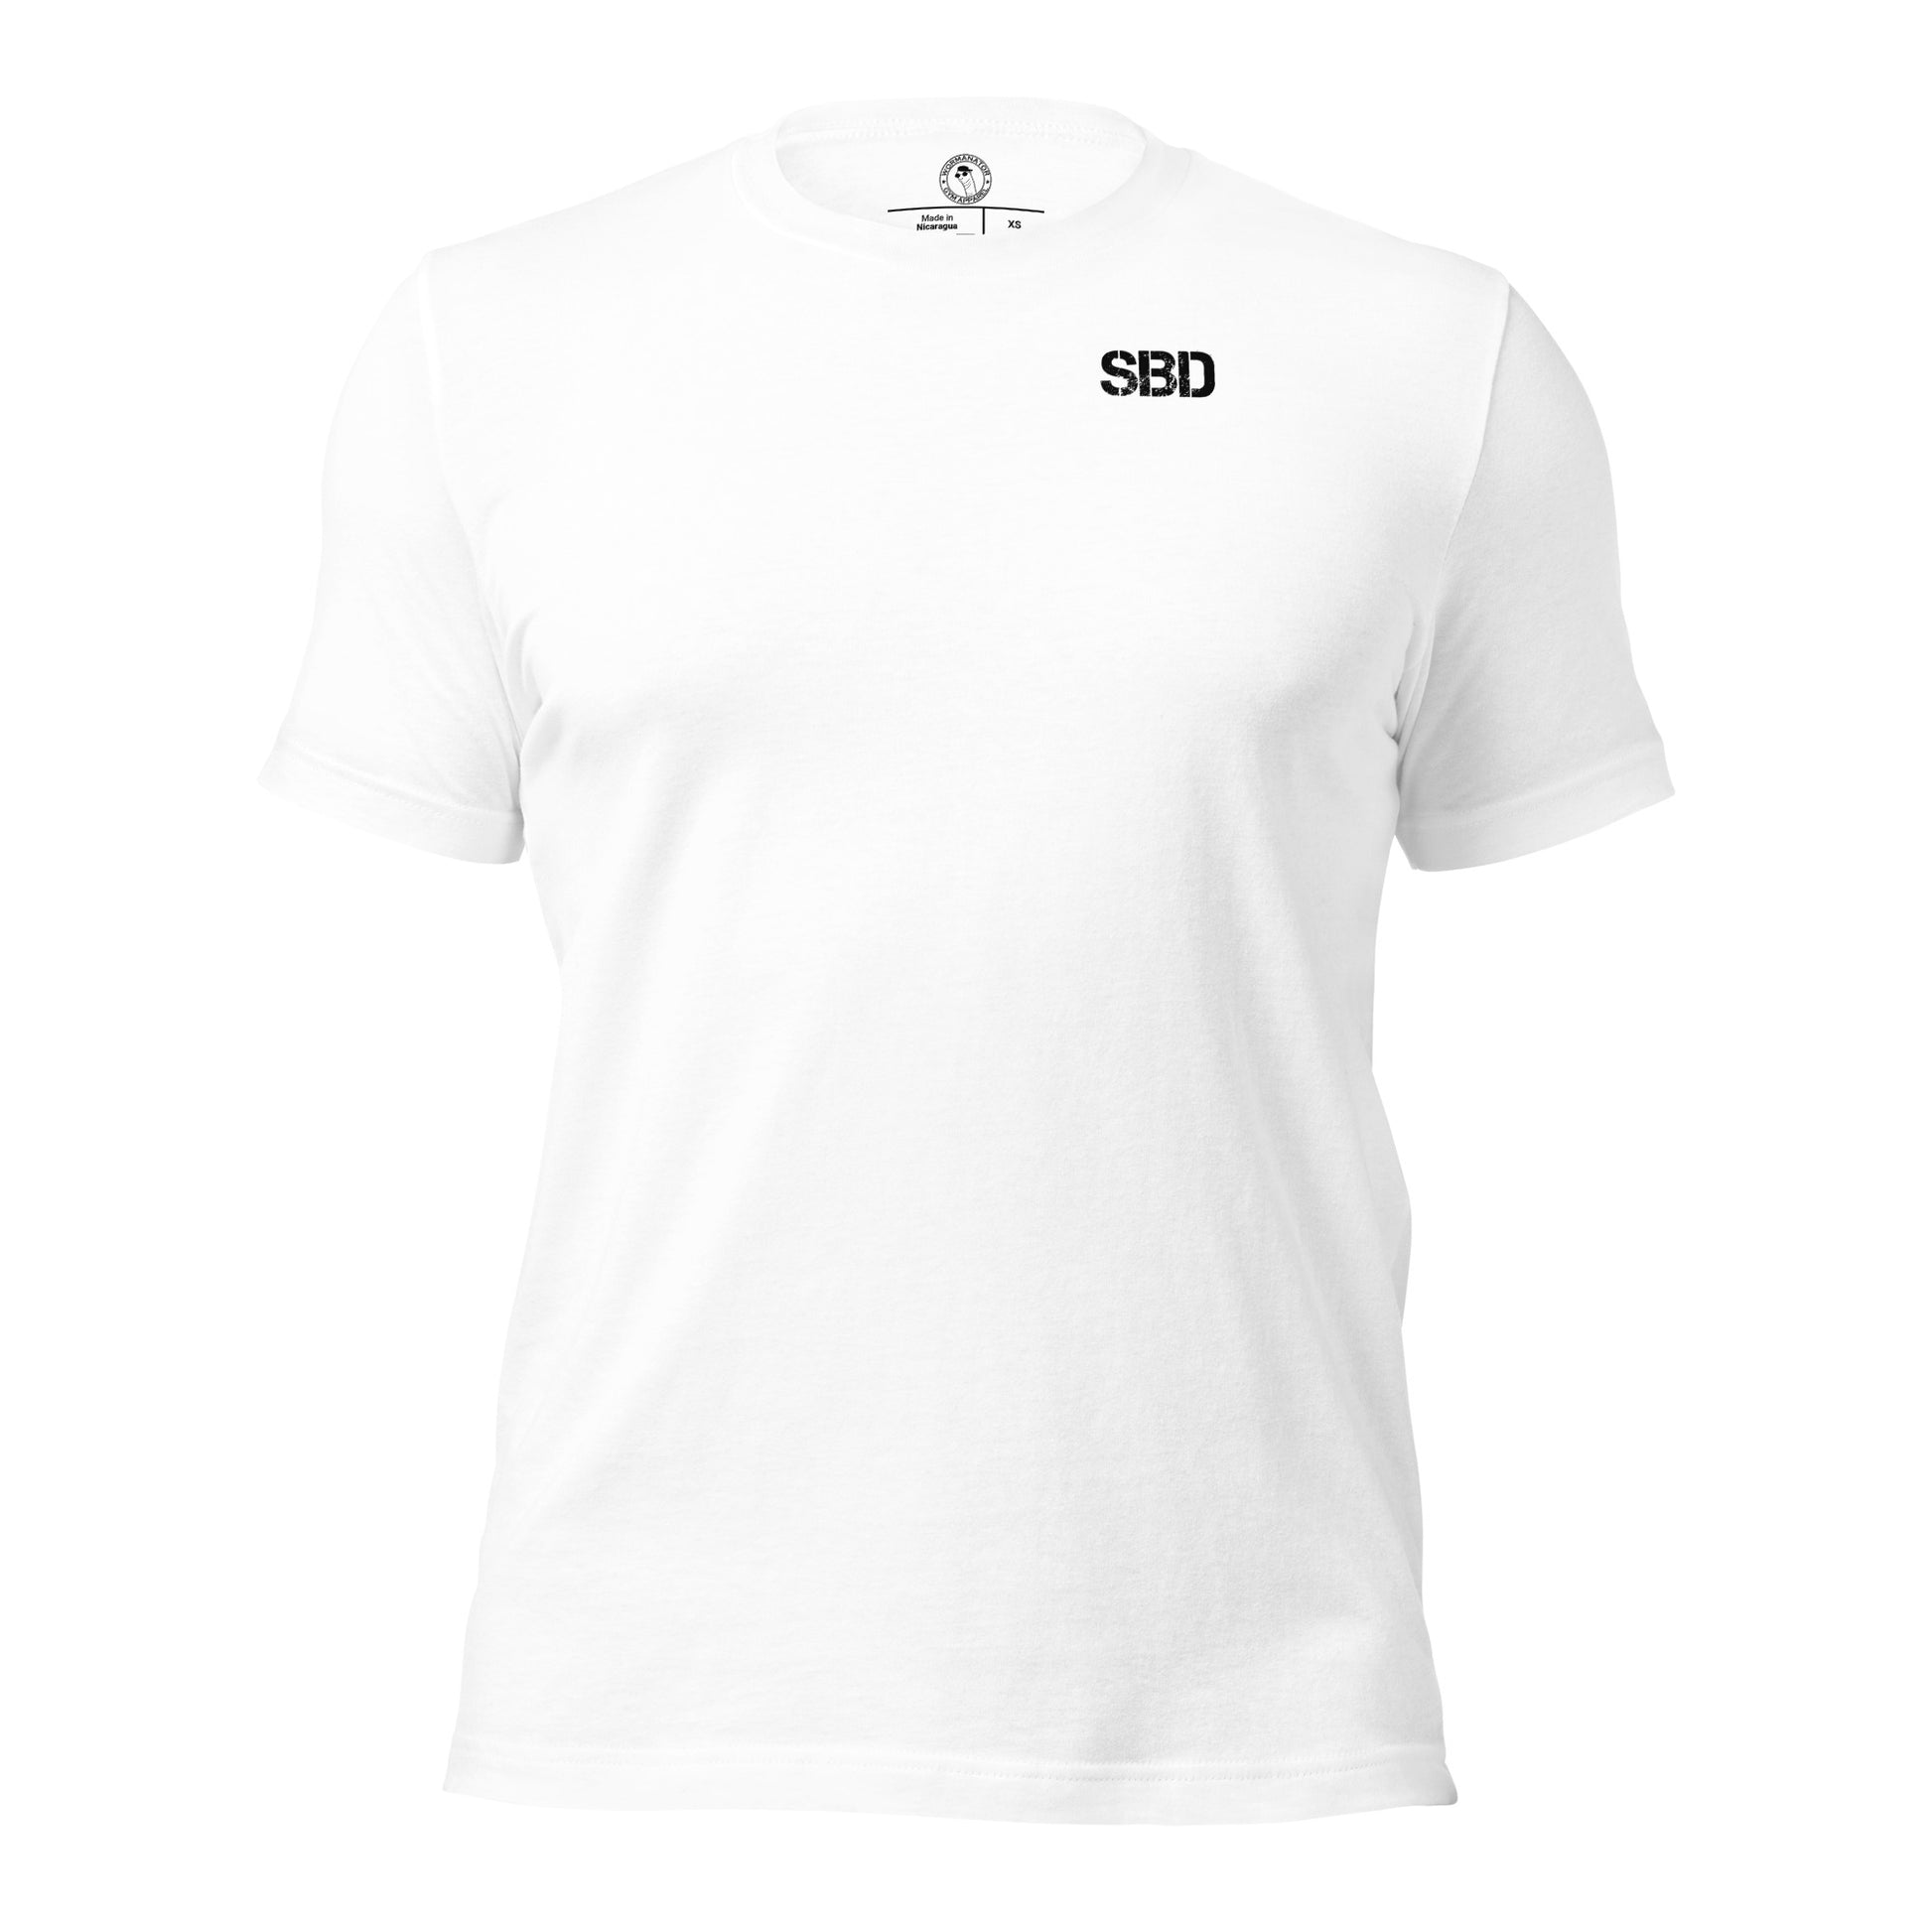 Squat Bench Deadlift (SBD) Shirt in White